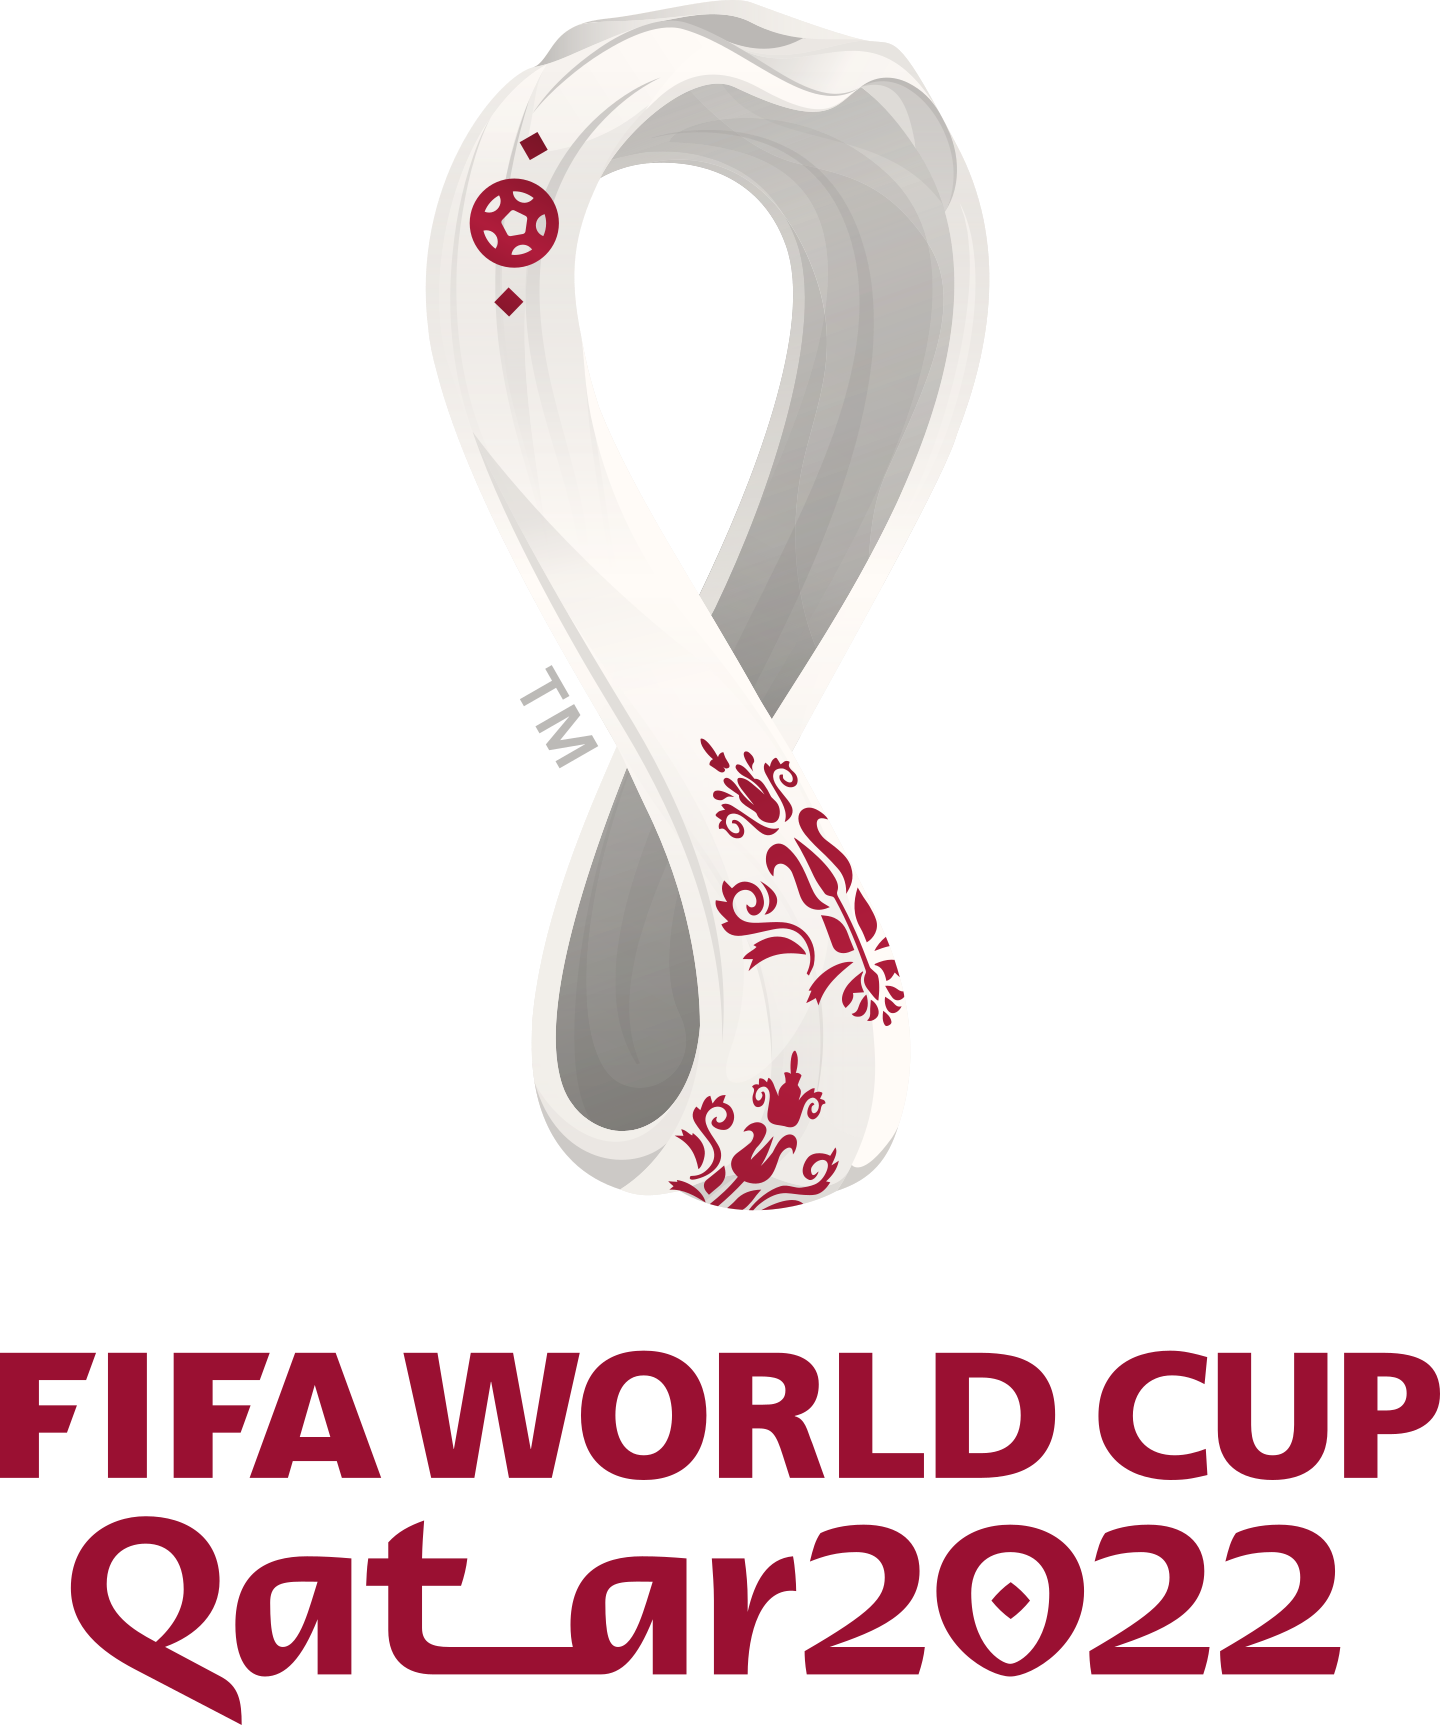 world cup 2022 logo 2 - Coupe du Monde de 2022 Logo